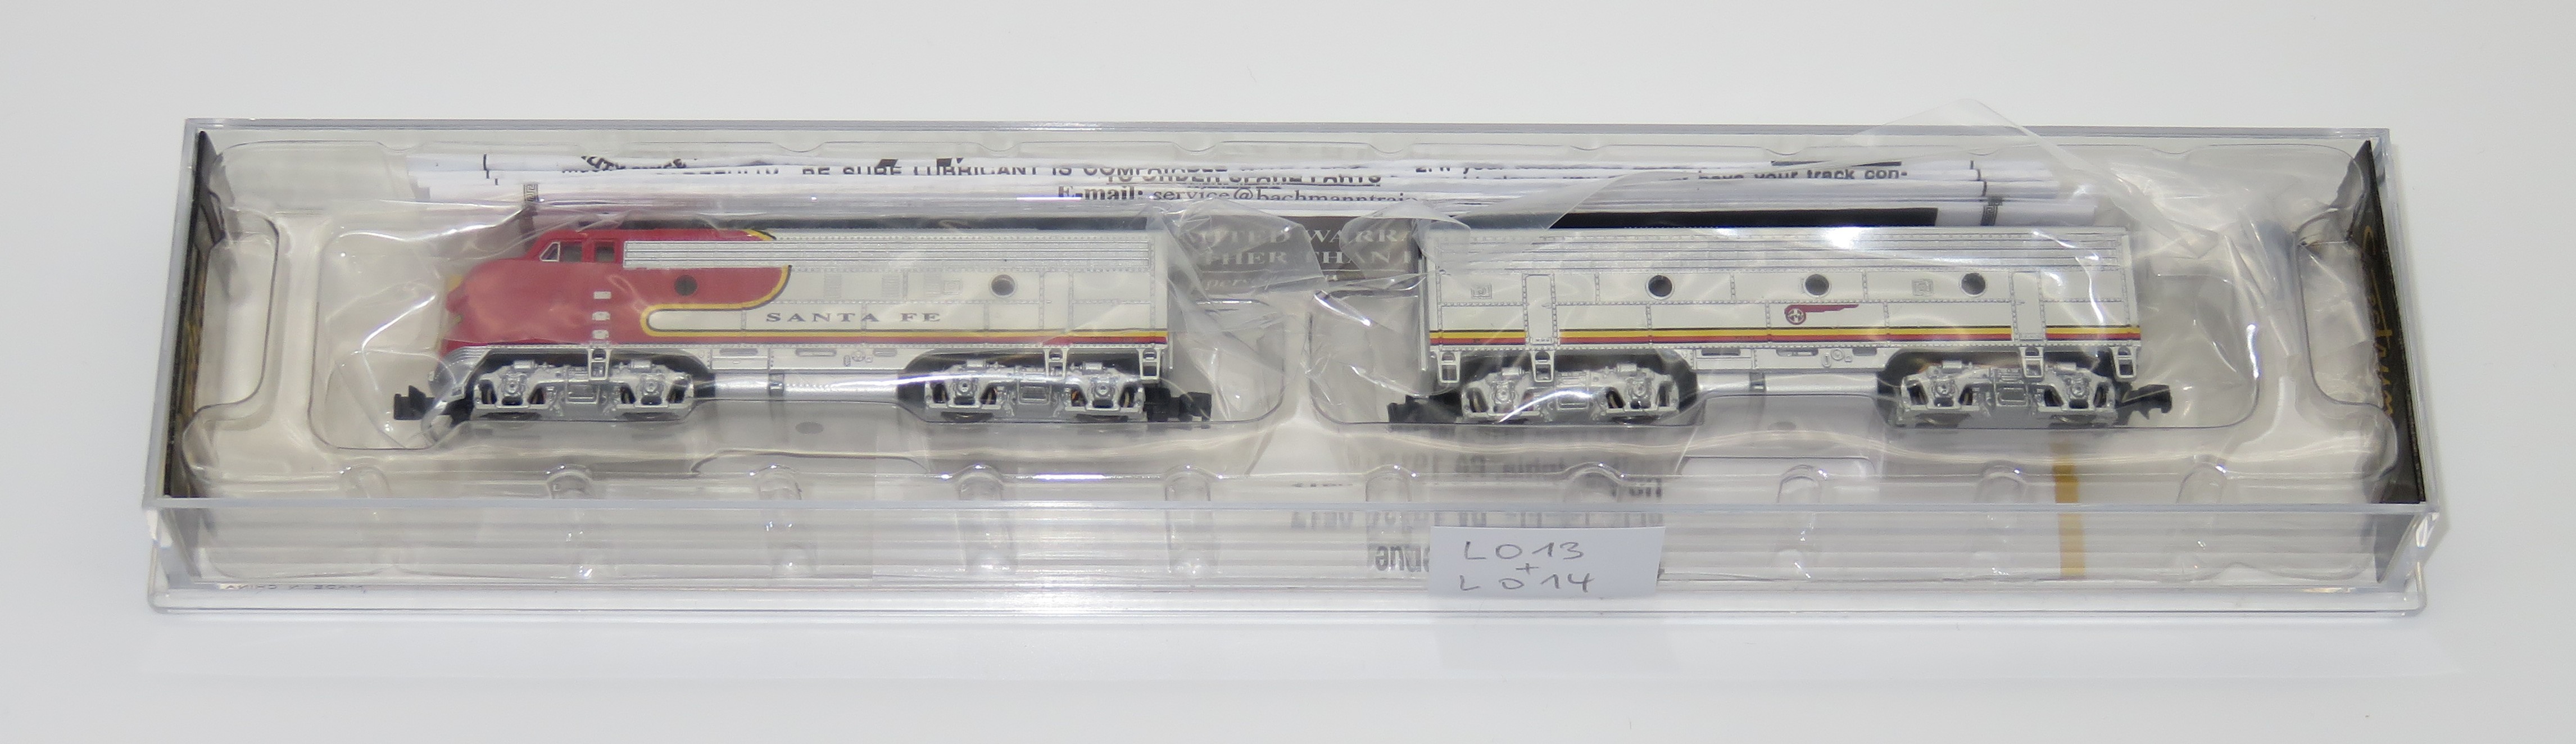 N Scale - Bachmann - 81252 - Locomotive, Diesel, EMD F7 - Santa Fe - Unknown